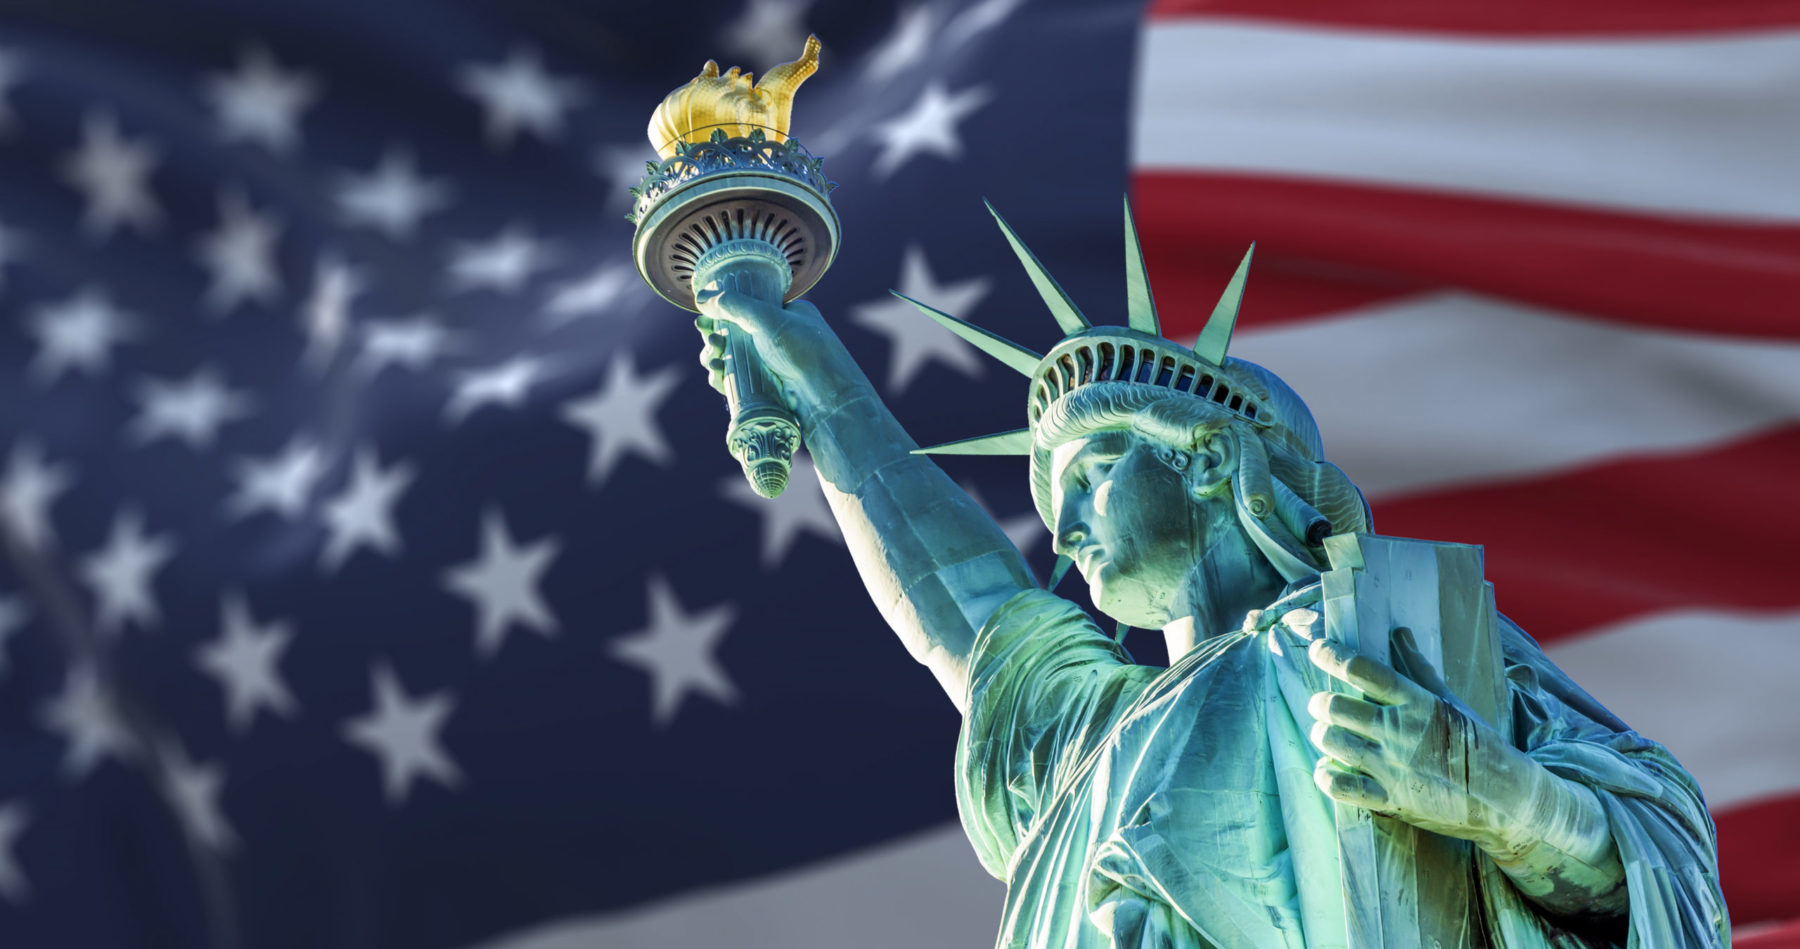 Vue en contre-plongée de la statue de la liberté devant le drapeau américain. Elle est bleue turquoise et le flambeau est doré